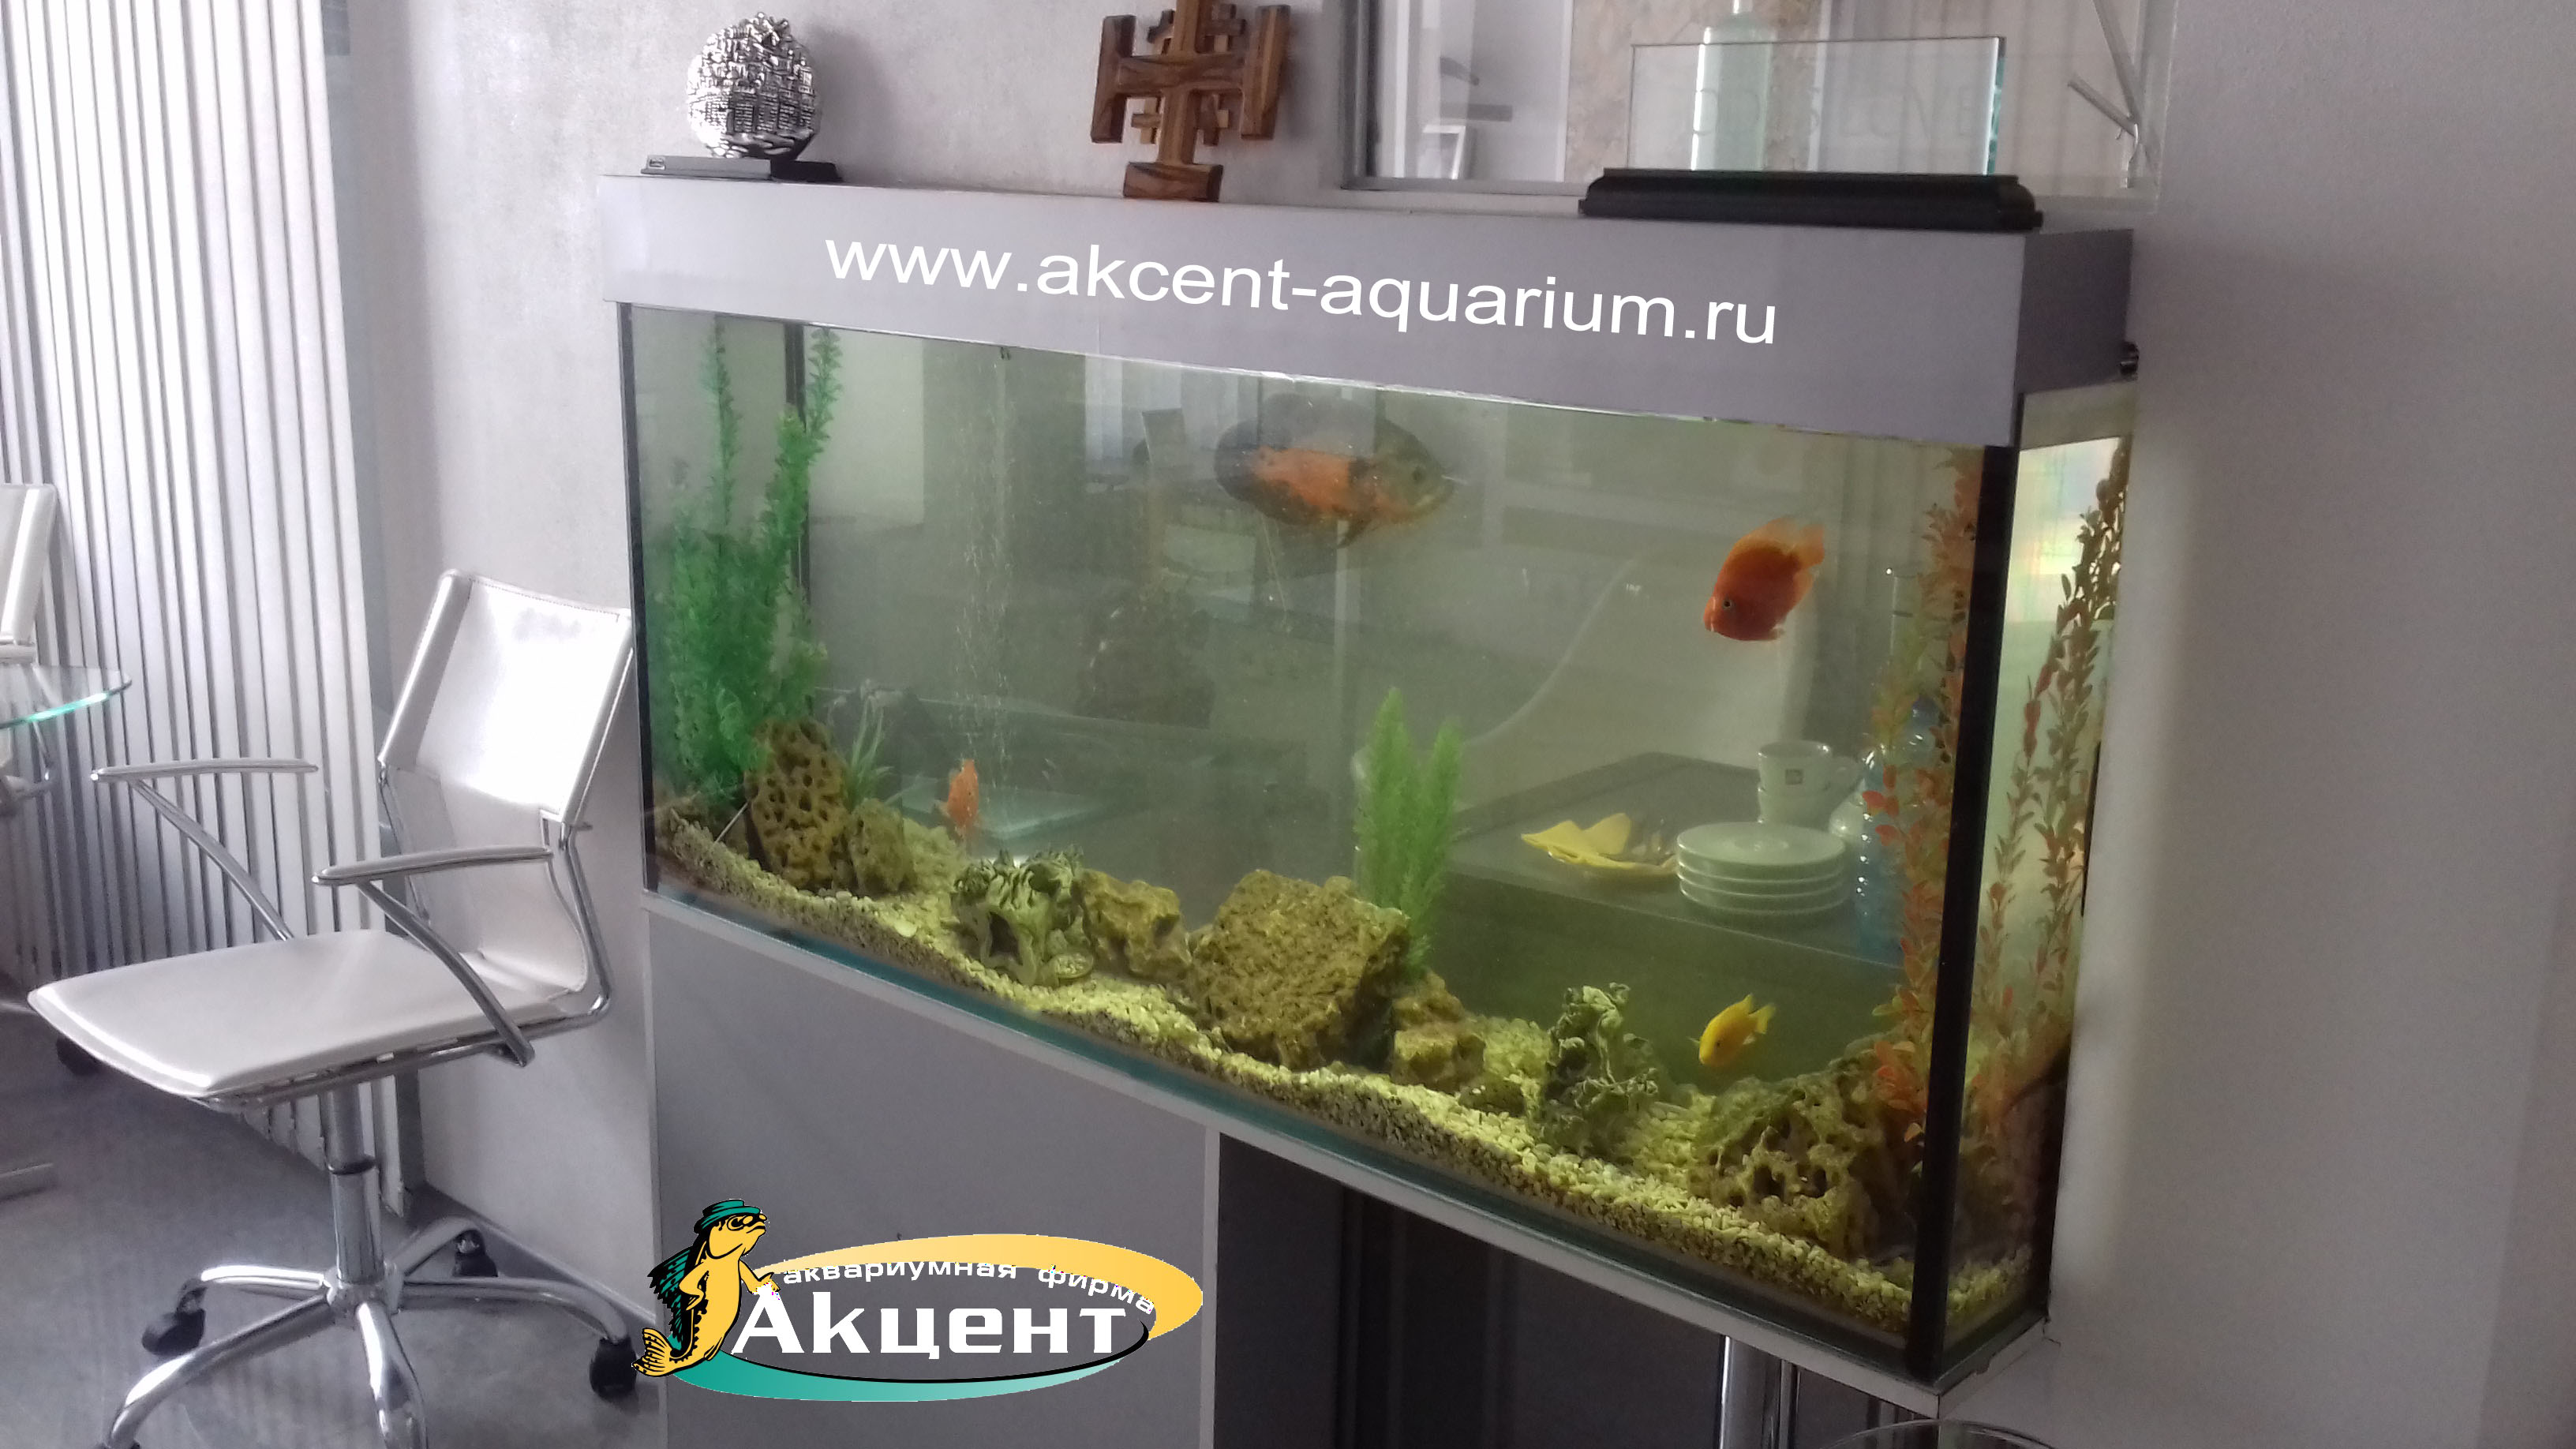 Акцент-аквариум,аквариум просмотровый 300 литров встроенный в стену